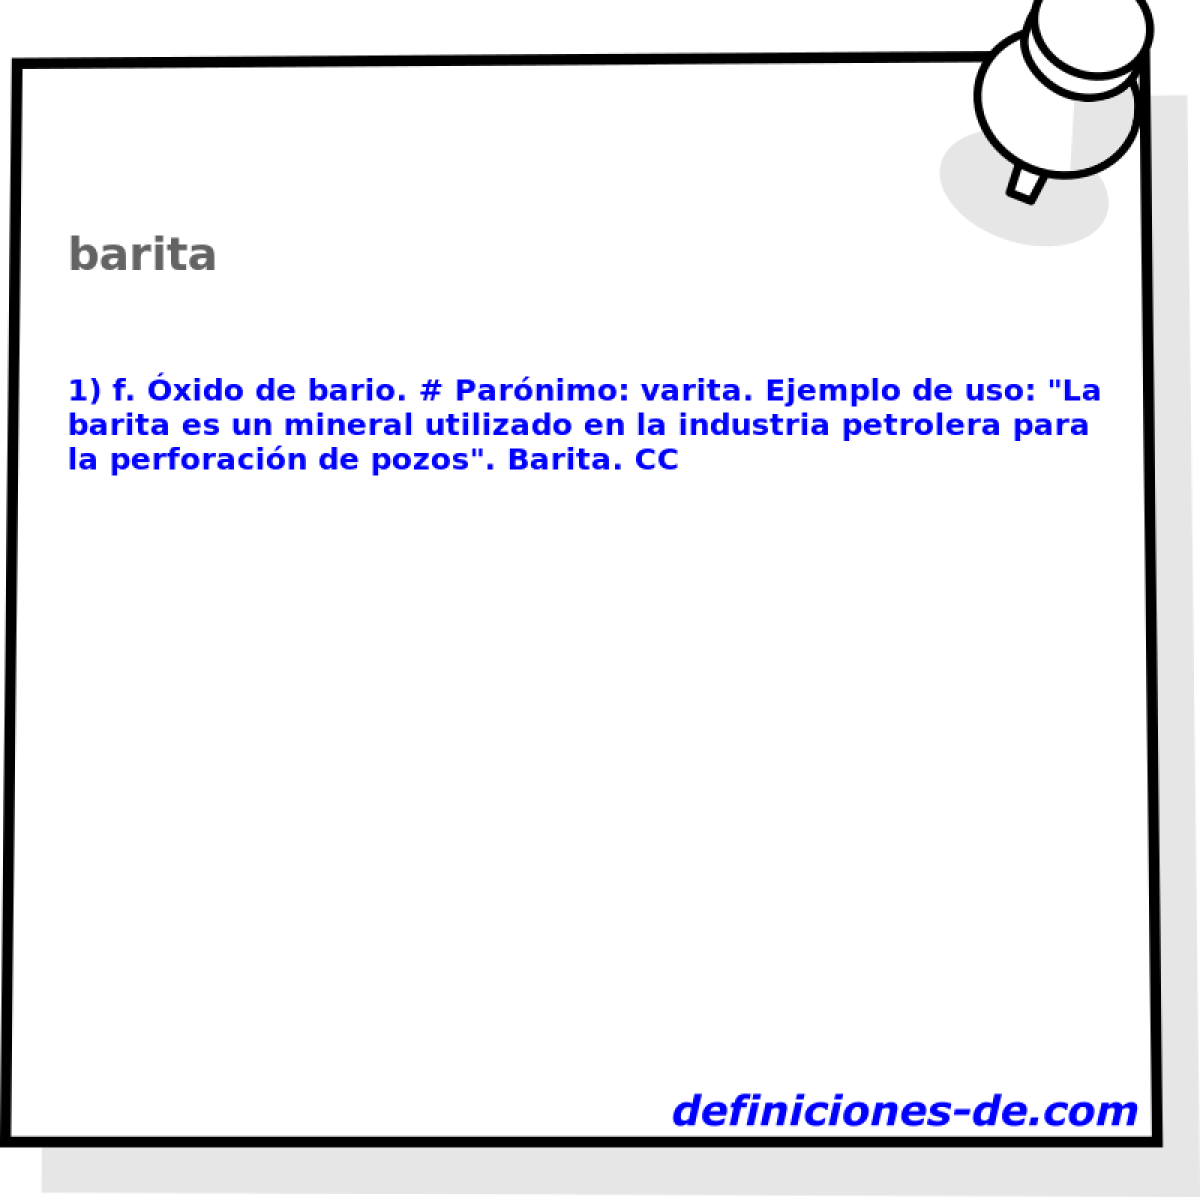 barita 